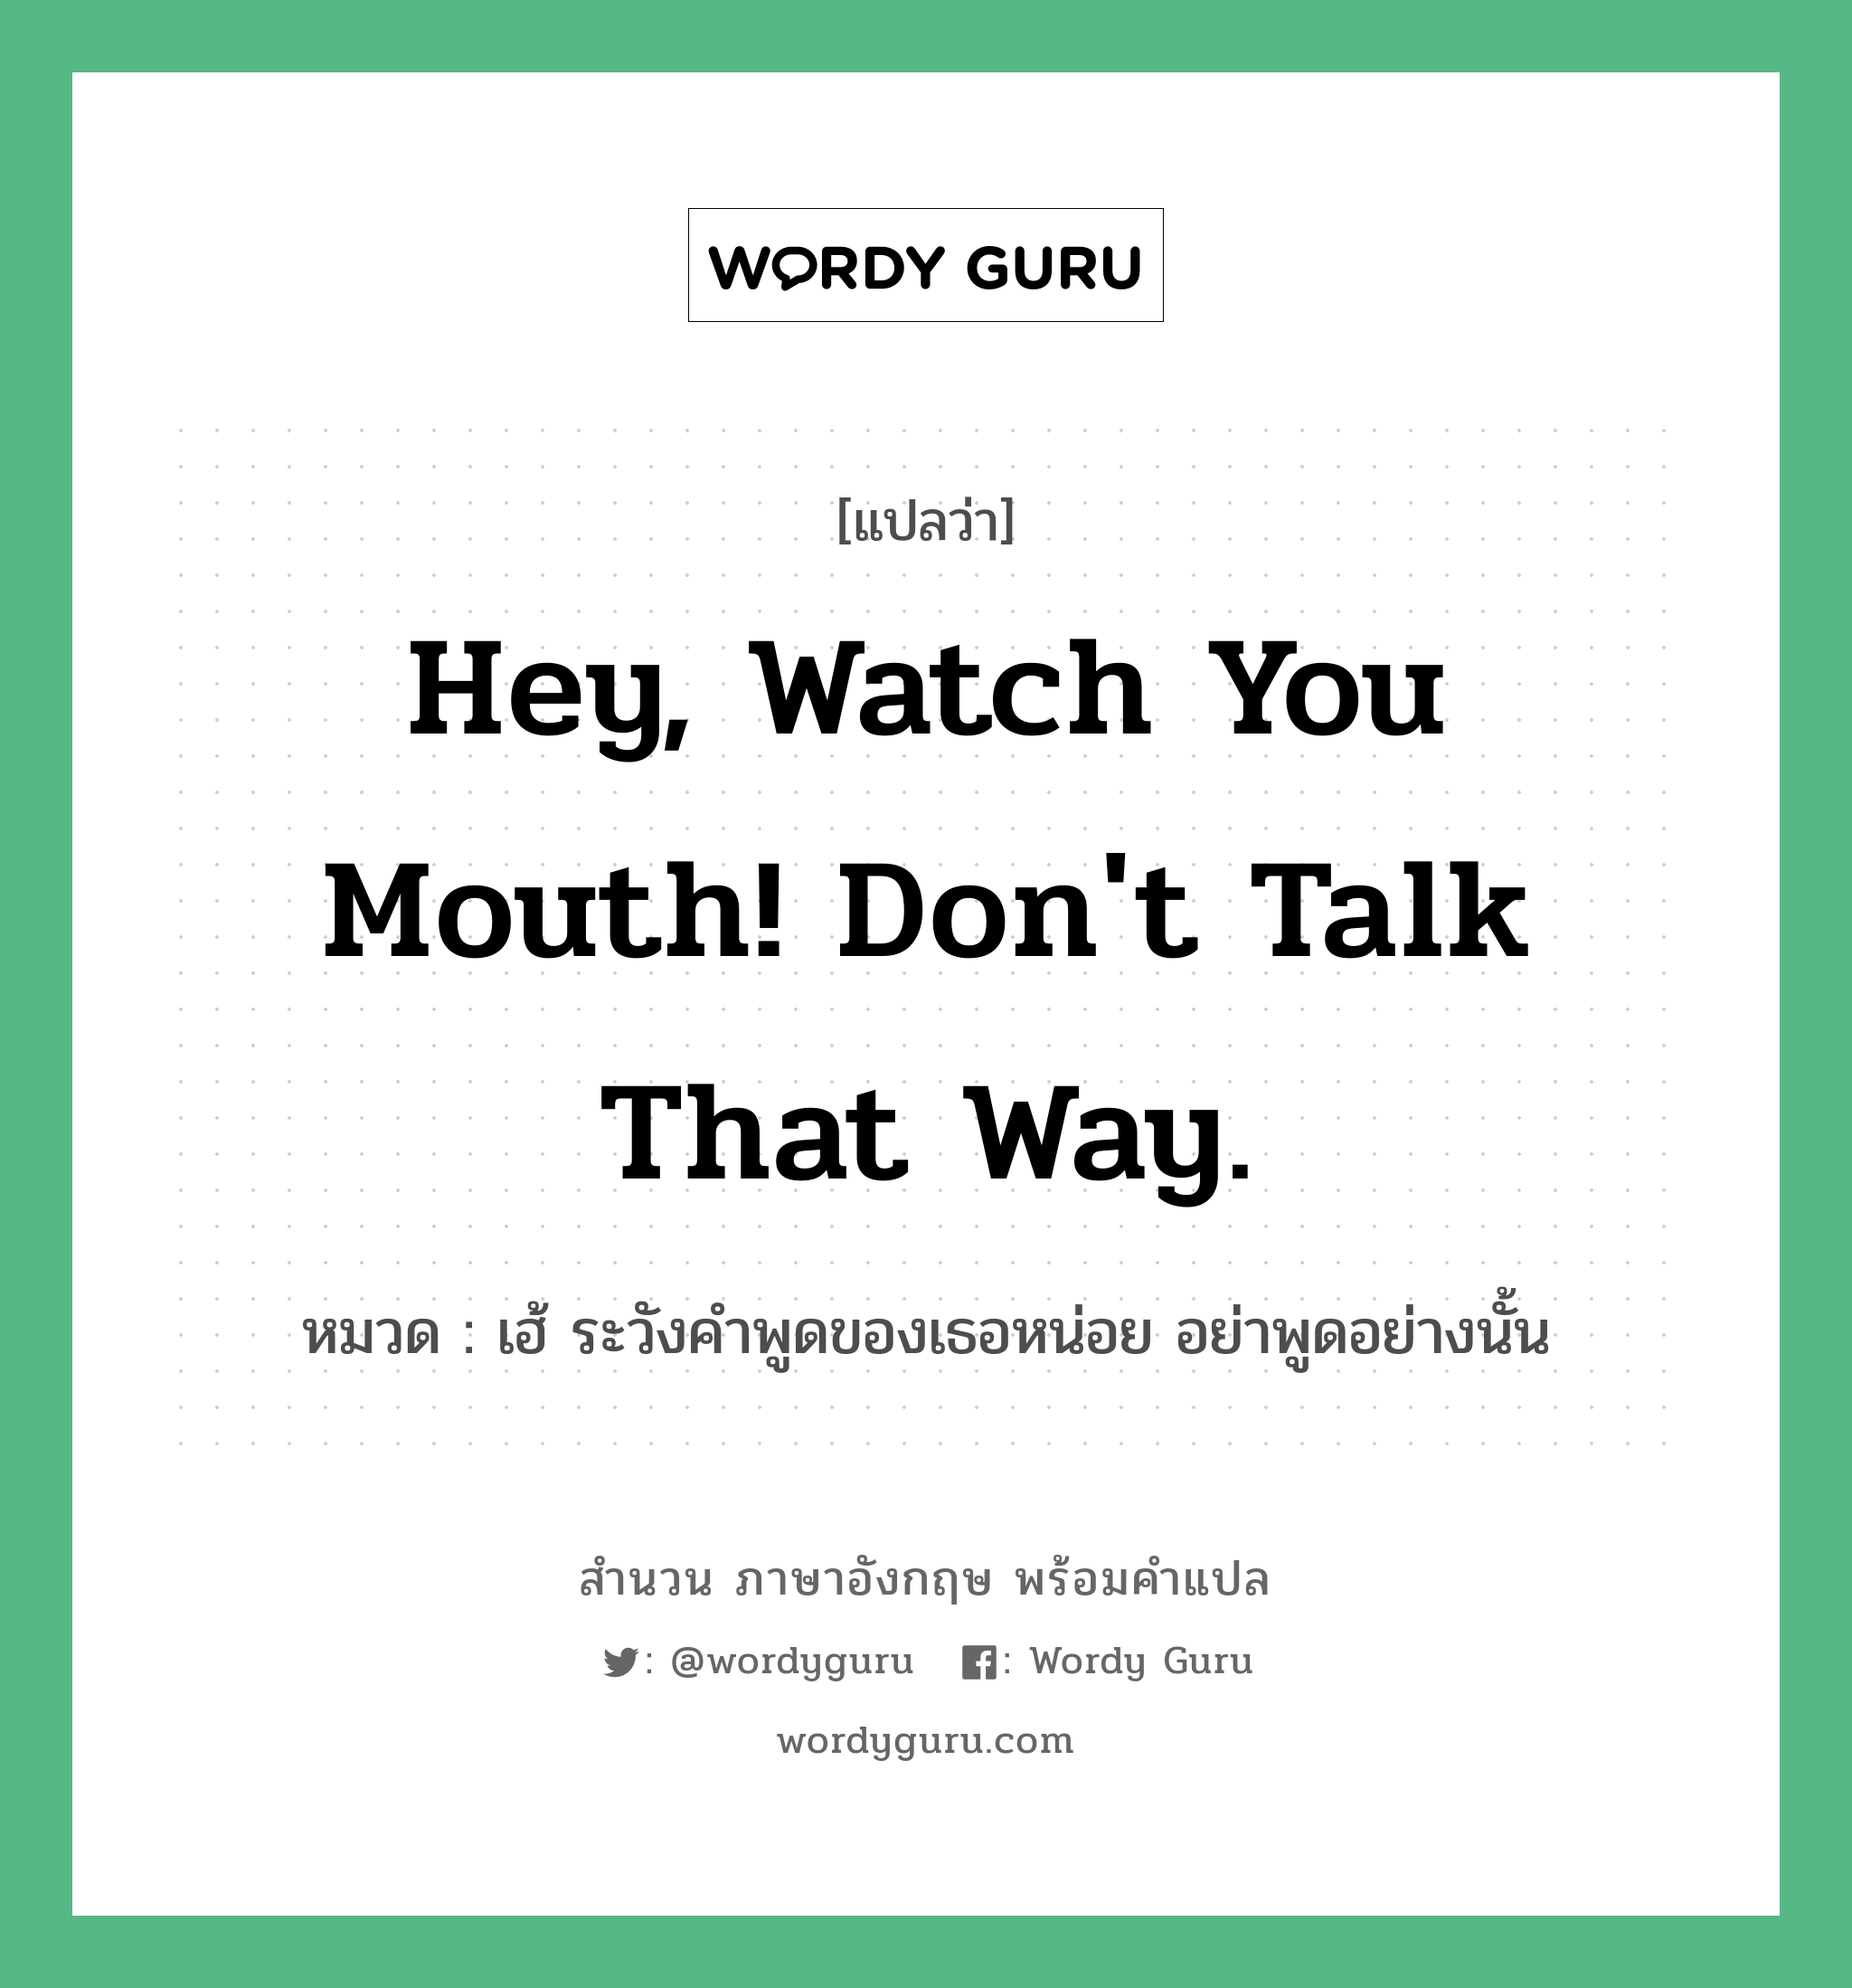 Hey, watch you mouth! Don't talk that way. แปลว่า?, สำนวนภาษาอังกฤษ Hey, watch you mouth! Don't talk that way. หมวด เฮ้ ระวังคำพูดของเธอหน่อย อย่าพูดอย่างนั้น